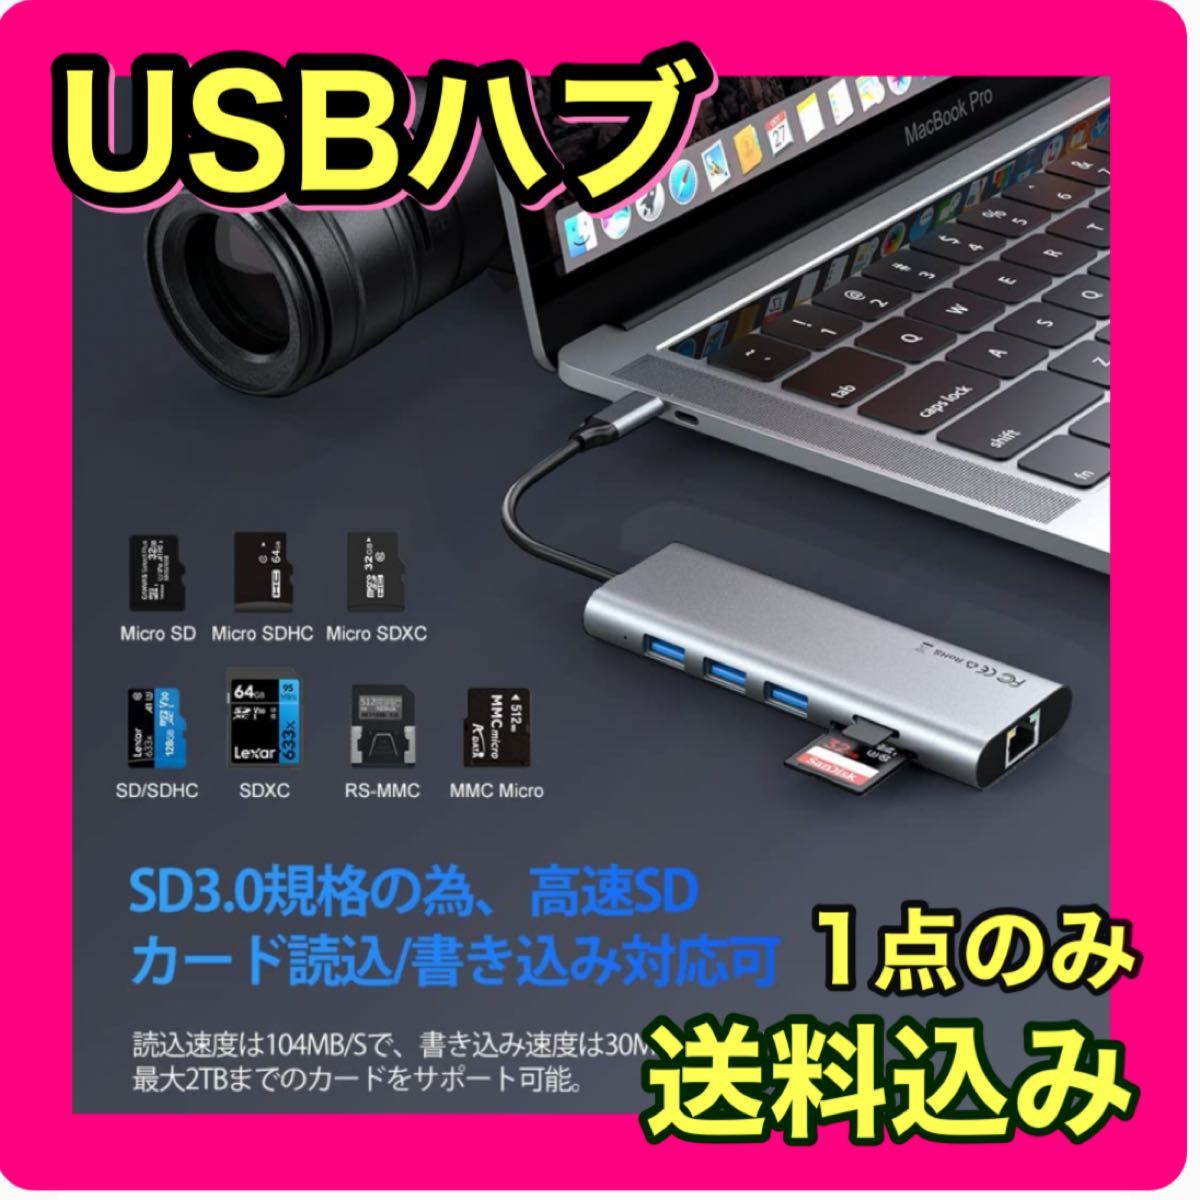 USB C ハブ 7-IN-1 Type C ハブ LANポート付き 変換アダプタ 4K HDMI 超高速 USB3.0 